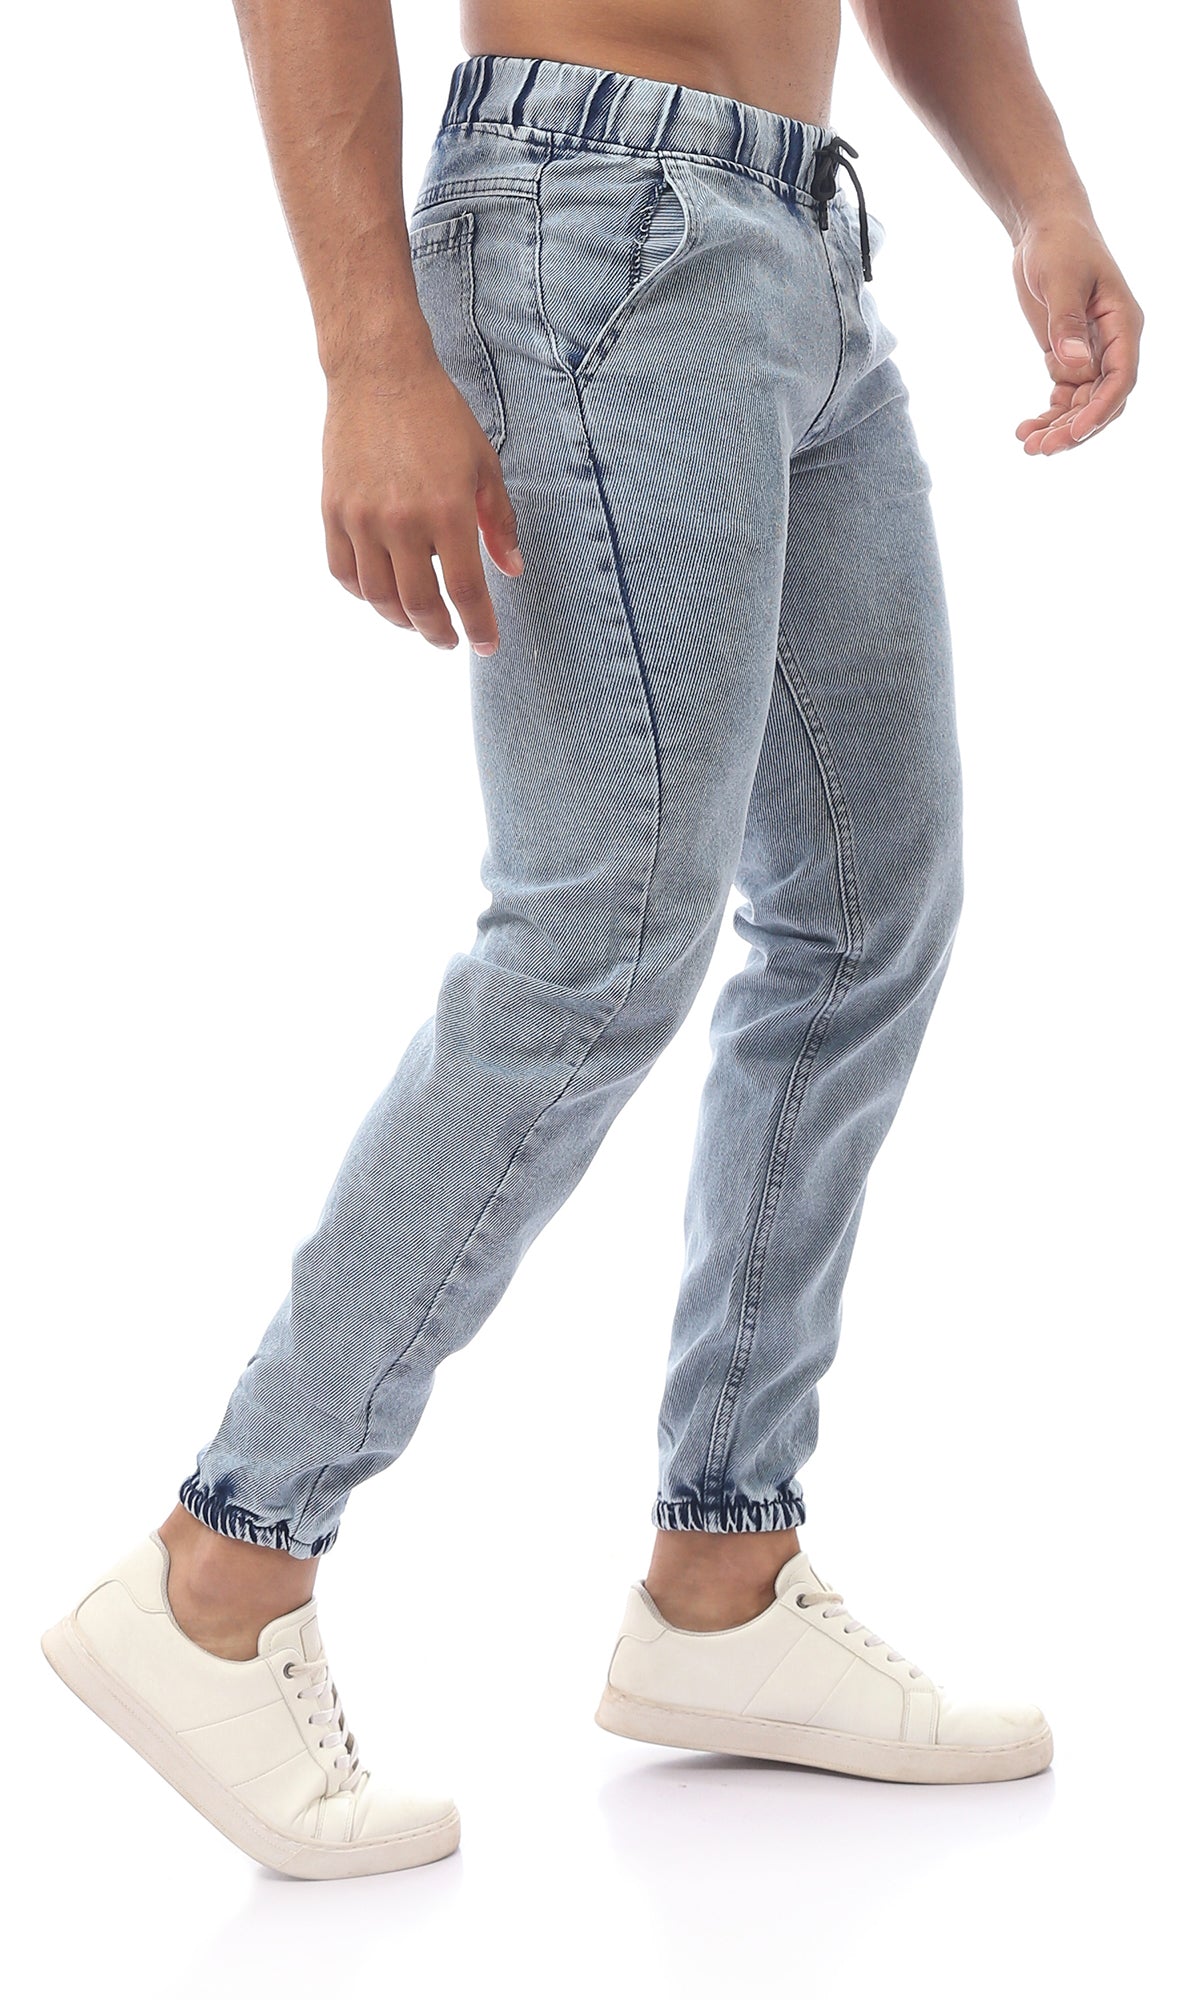 O172051 Light Jeans Blue Slip On Elastic Waist